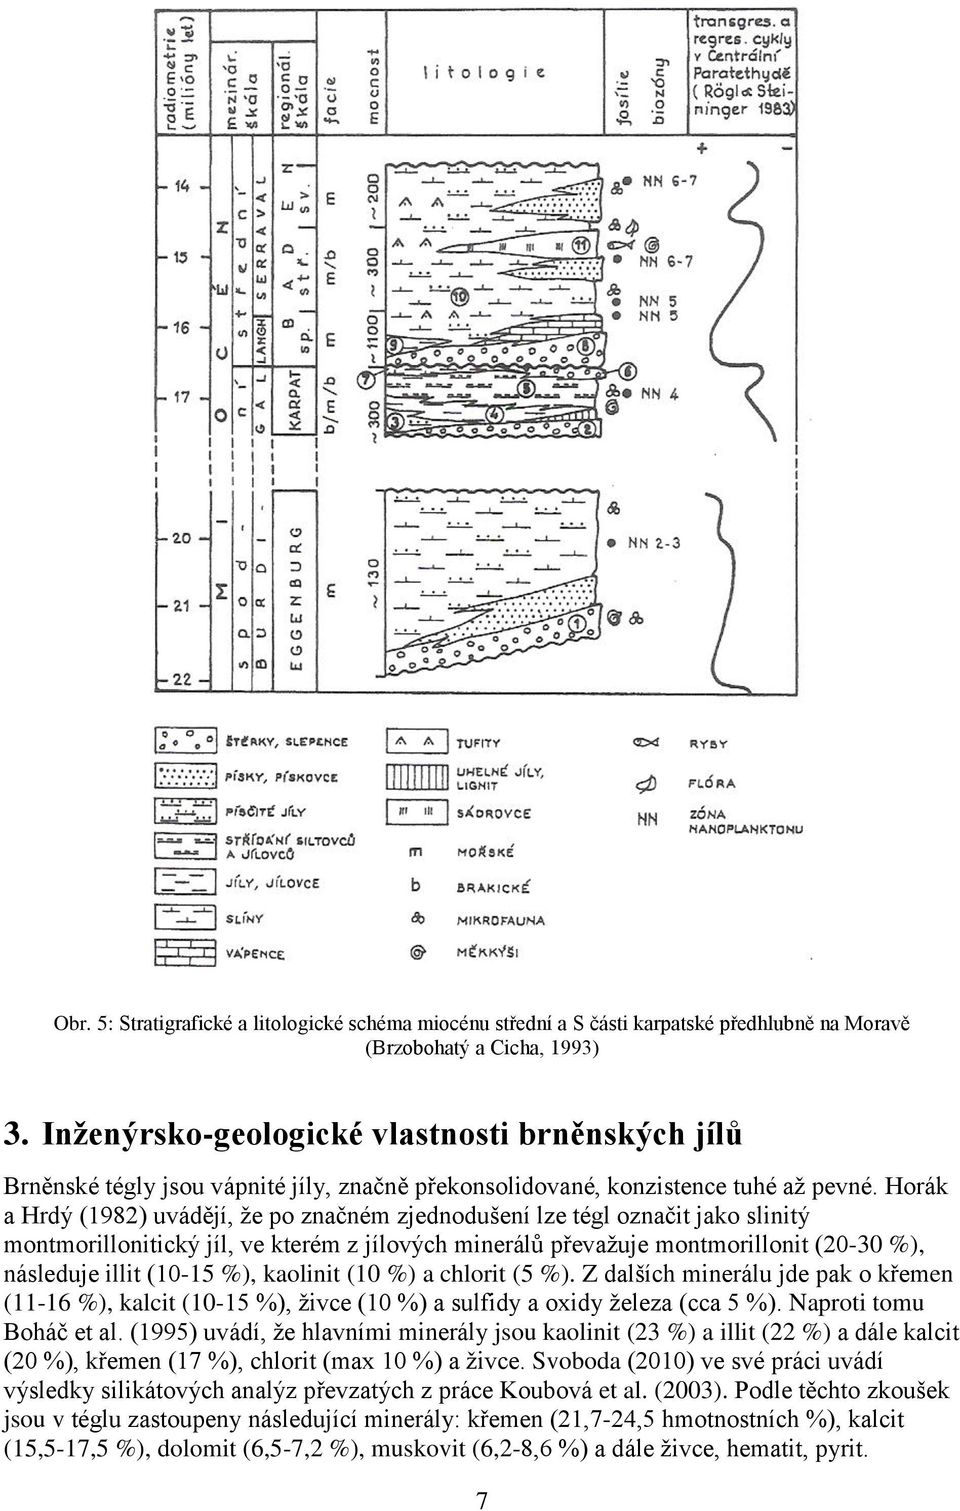 Horák a Hrdý (1982) uvádějí, že po značném zjednodušení lze tégl označit jako slinitý montmorillonitický jíl, ve kterém z jílových minerálů převažuje montmorillonit (20-30 %), následuje illit (10-15